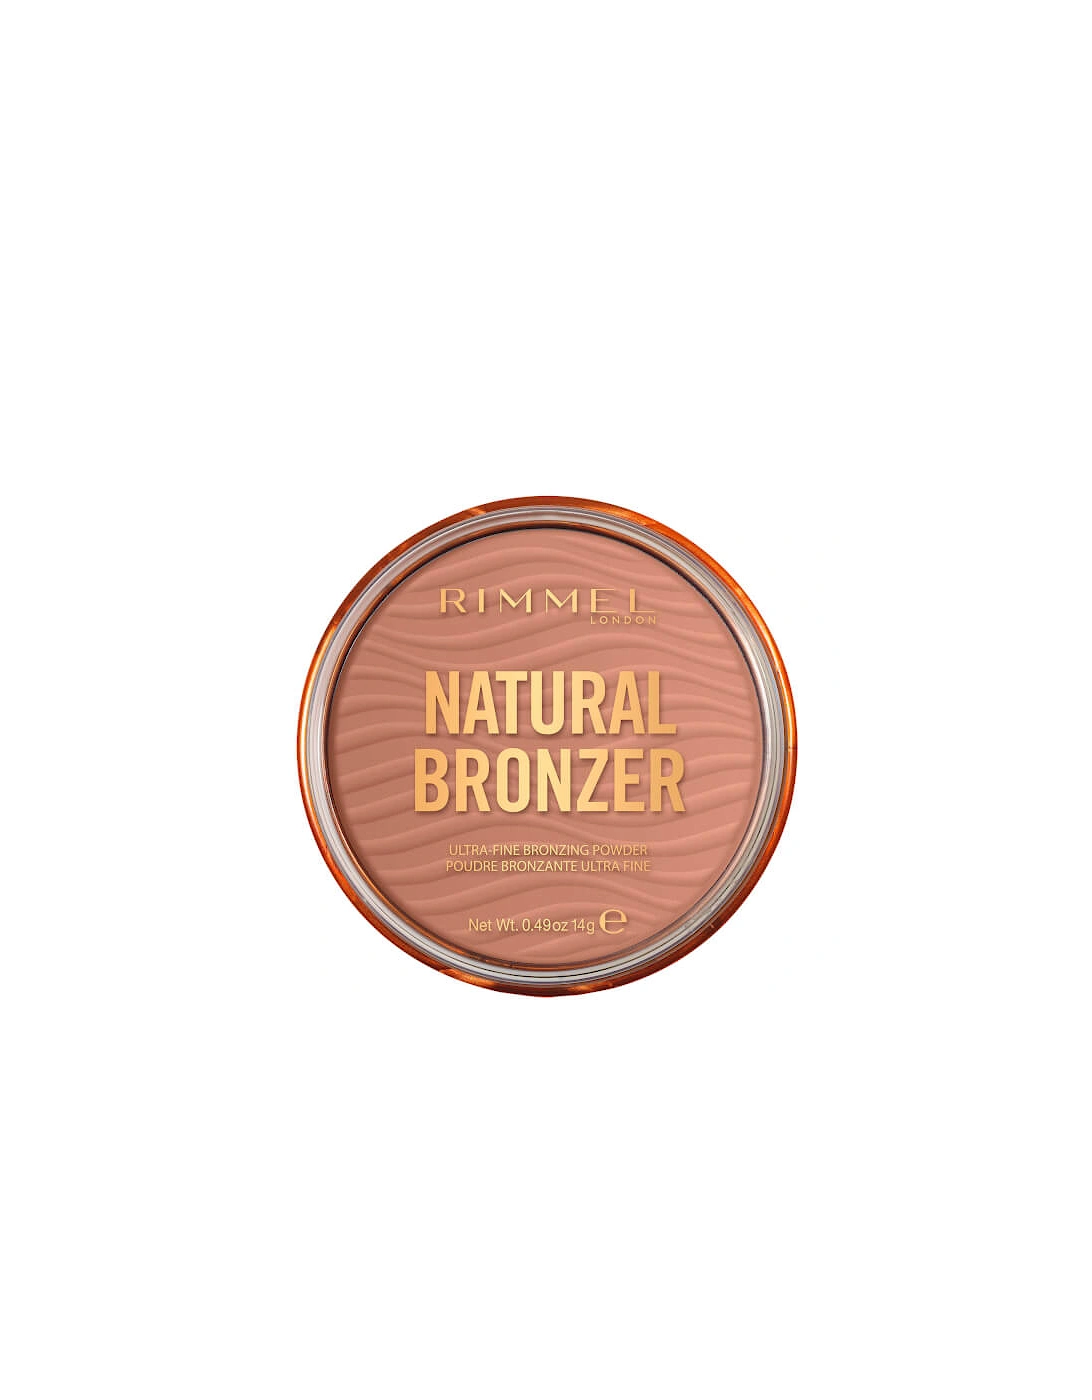 Natural Bronzer - 001 Sunlight, 2 of 1